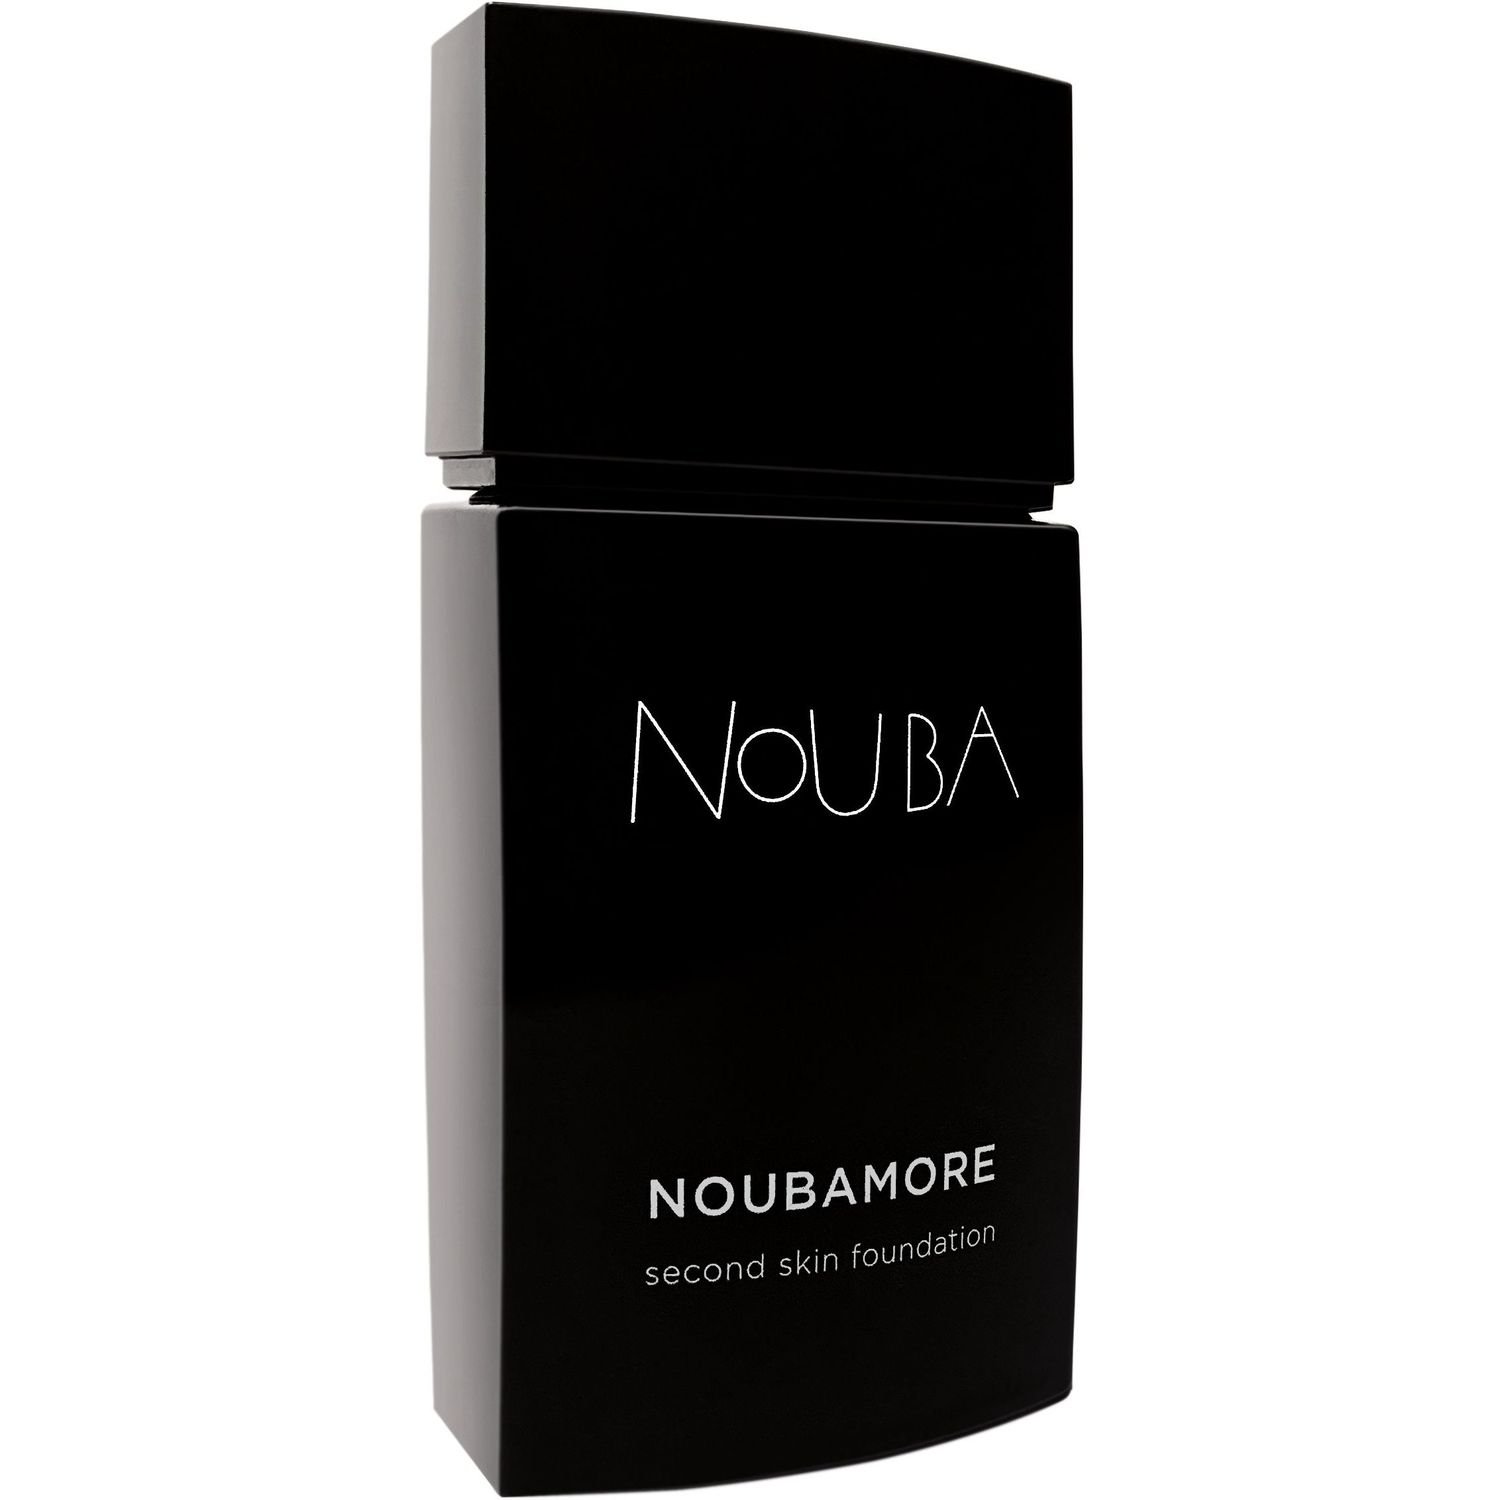 Тональная основа Nouba Noubamore Second Skin тон 86, 30 мл - фото 1